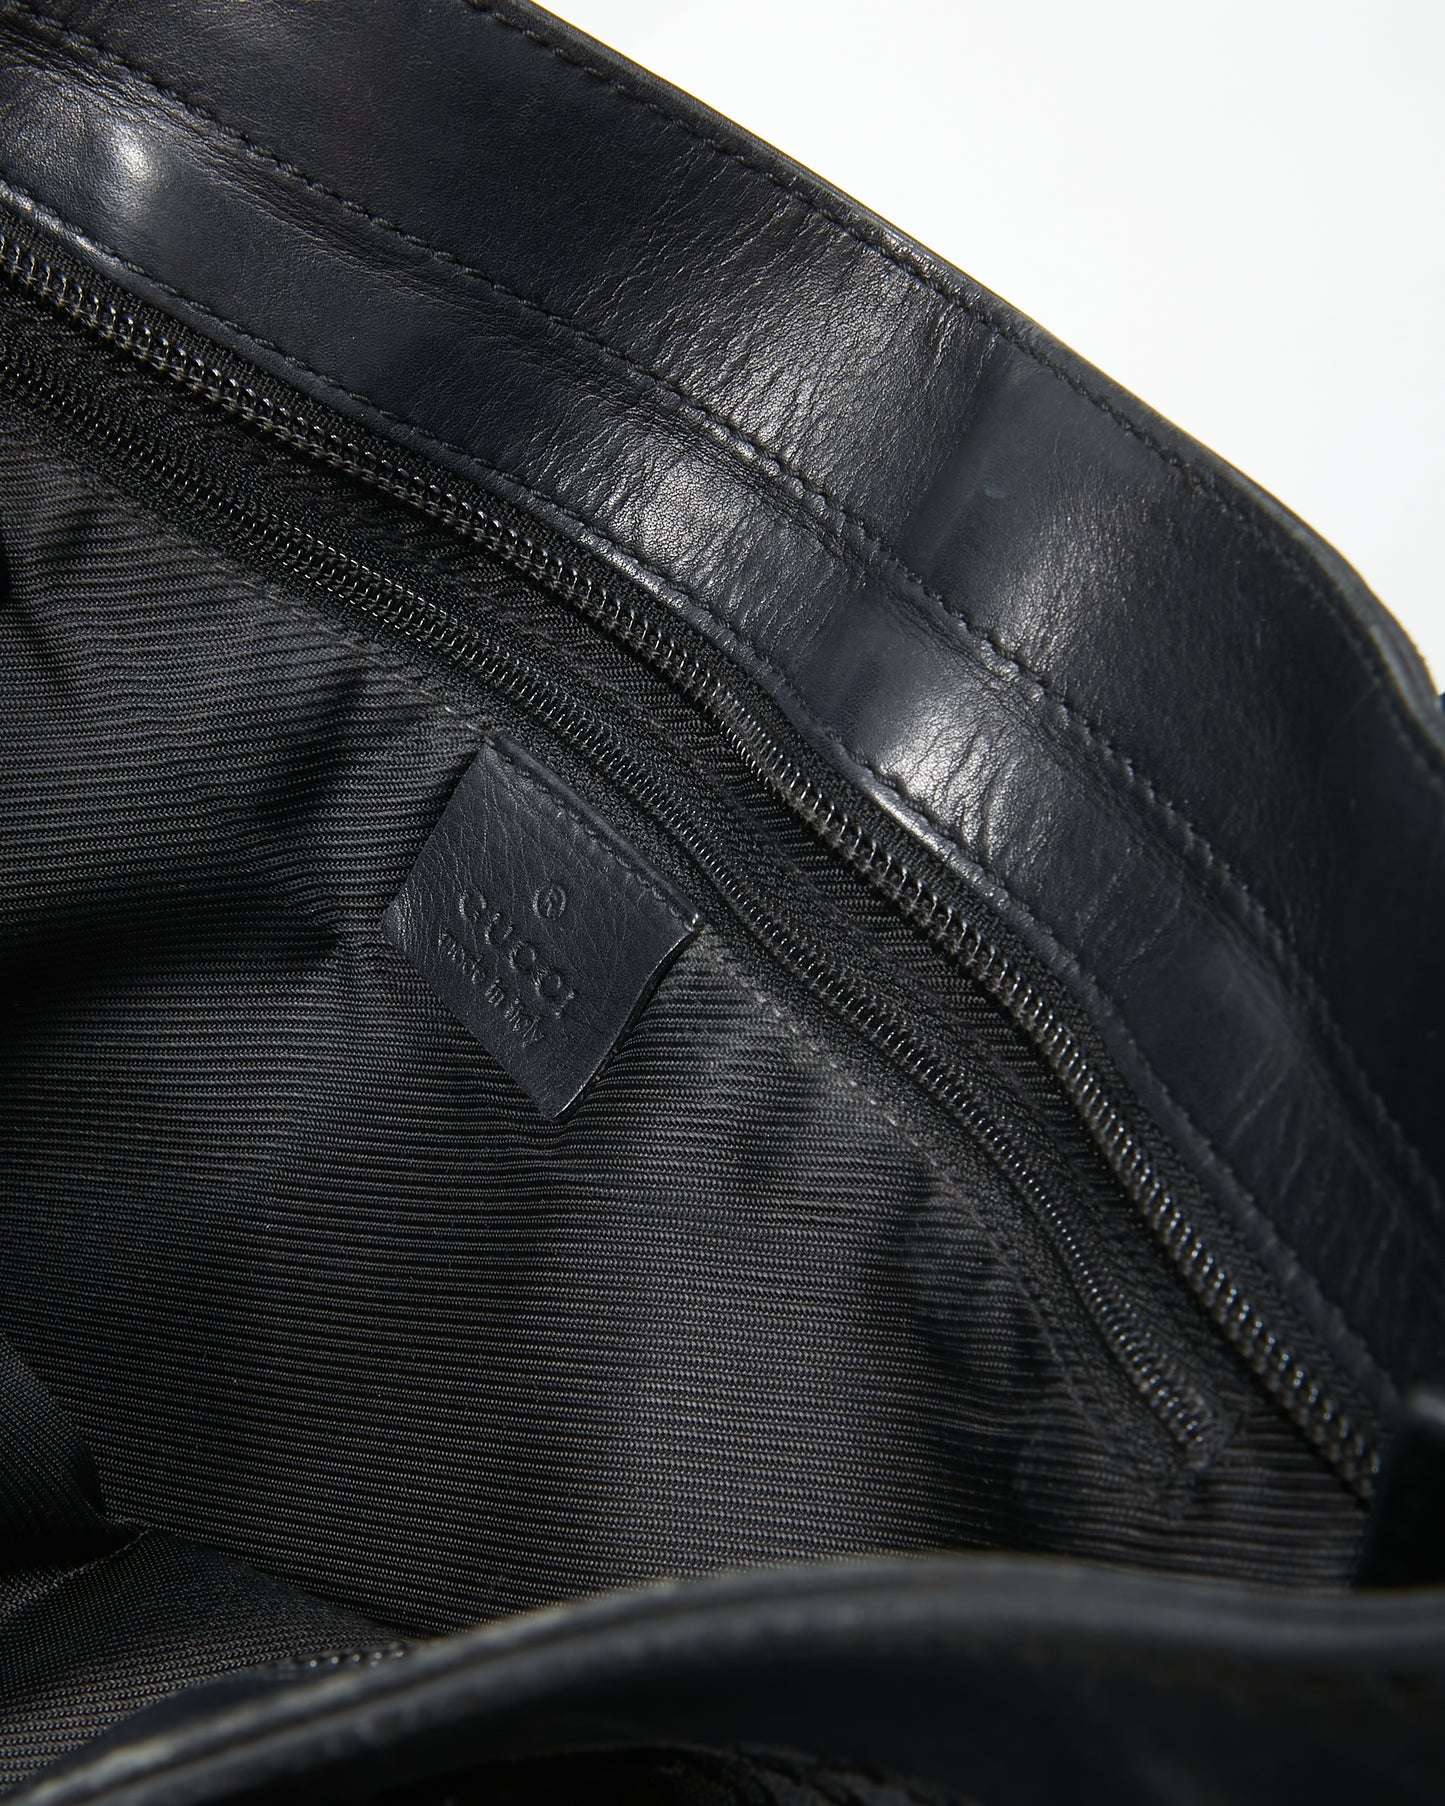 Gucci Black GG Supreme Monogram Canvas Leather Detail Tote